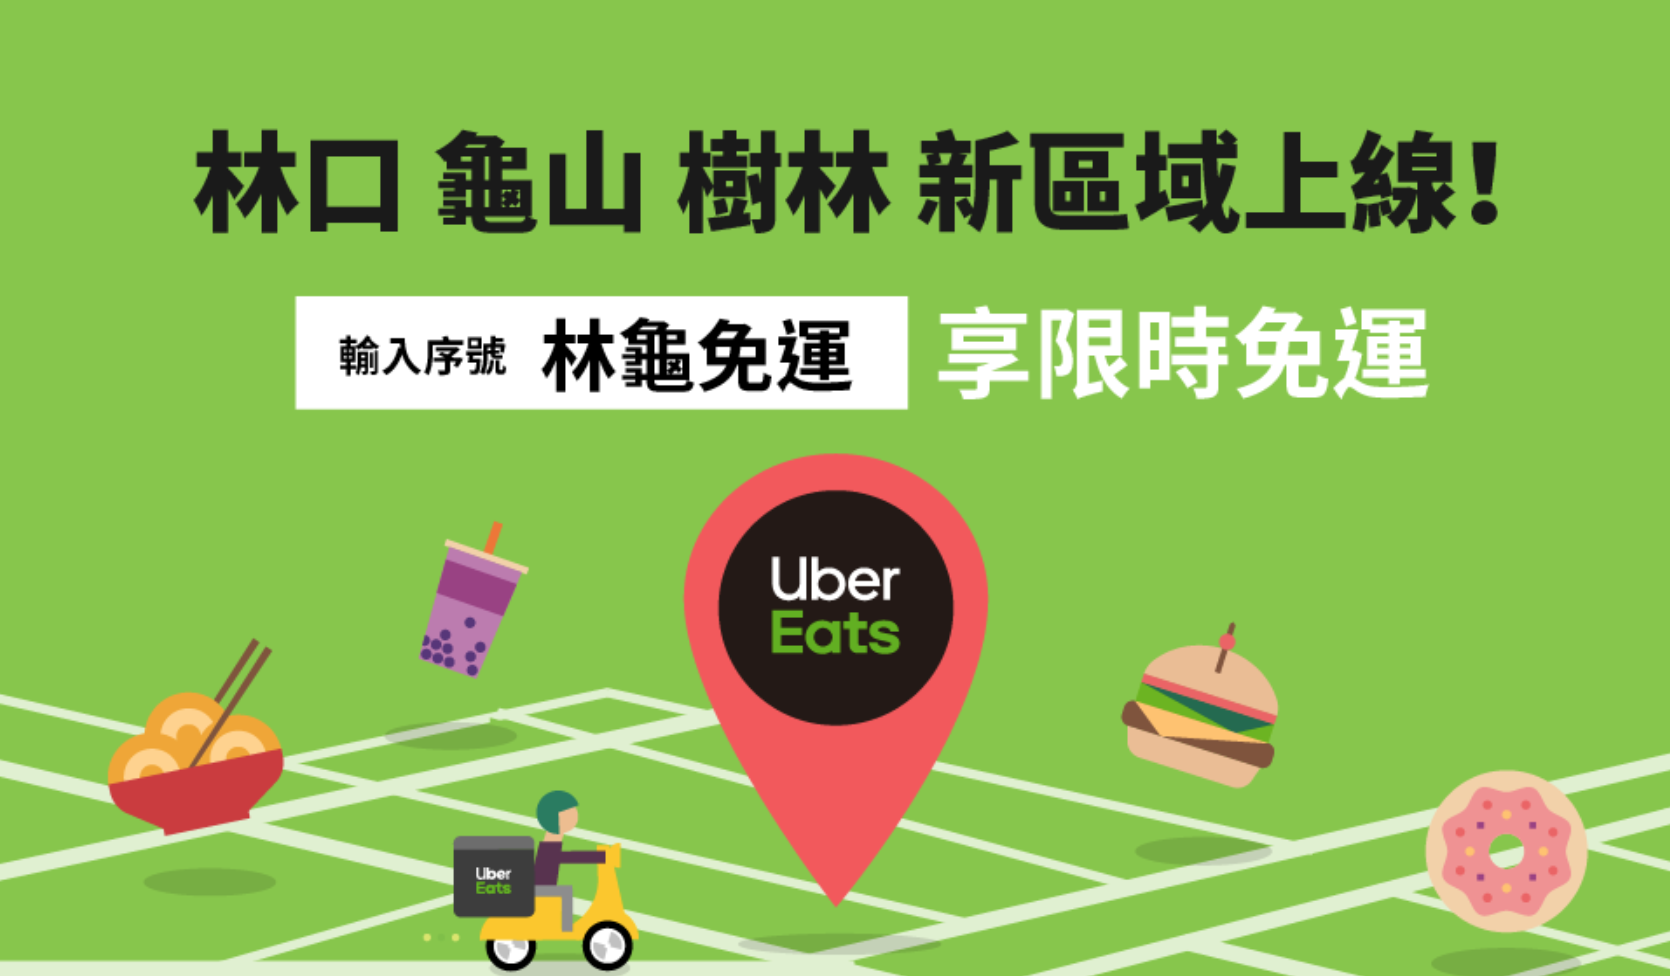 Uber Eats優惠-首二次訂餐可各折價100元餐廳外送首購優惠序號/折扣碼/推薦碼/promotion code 最新2019/8/812